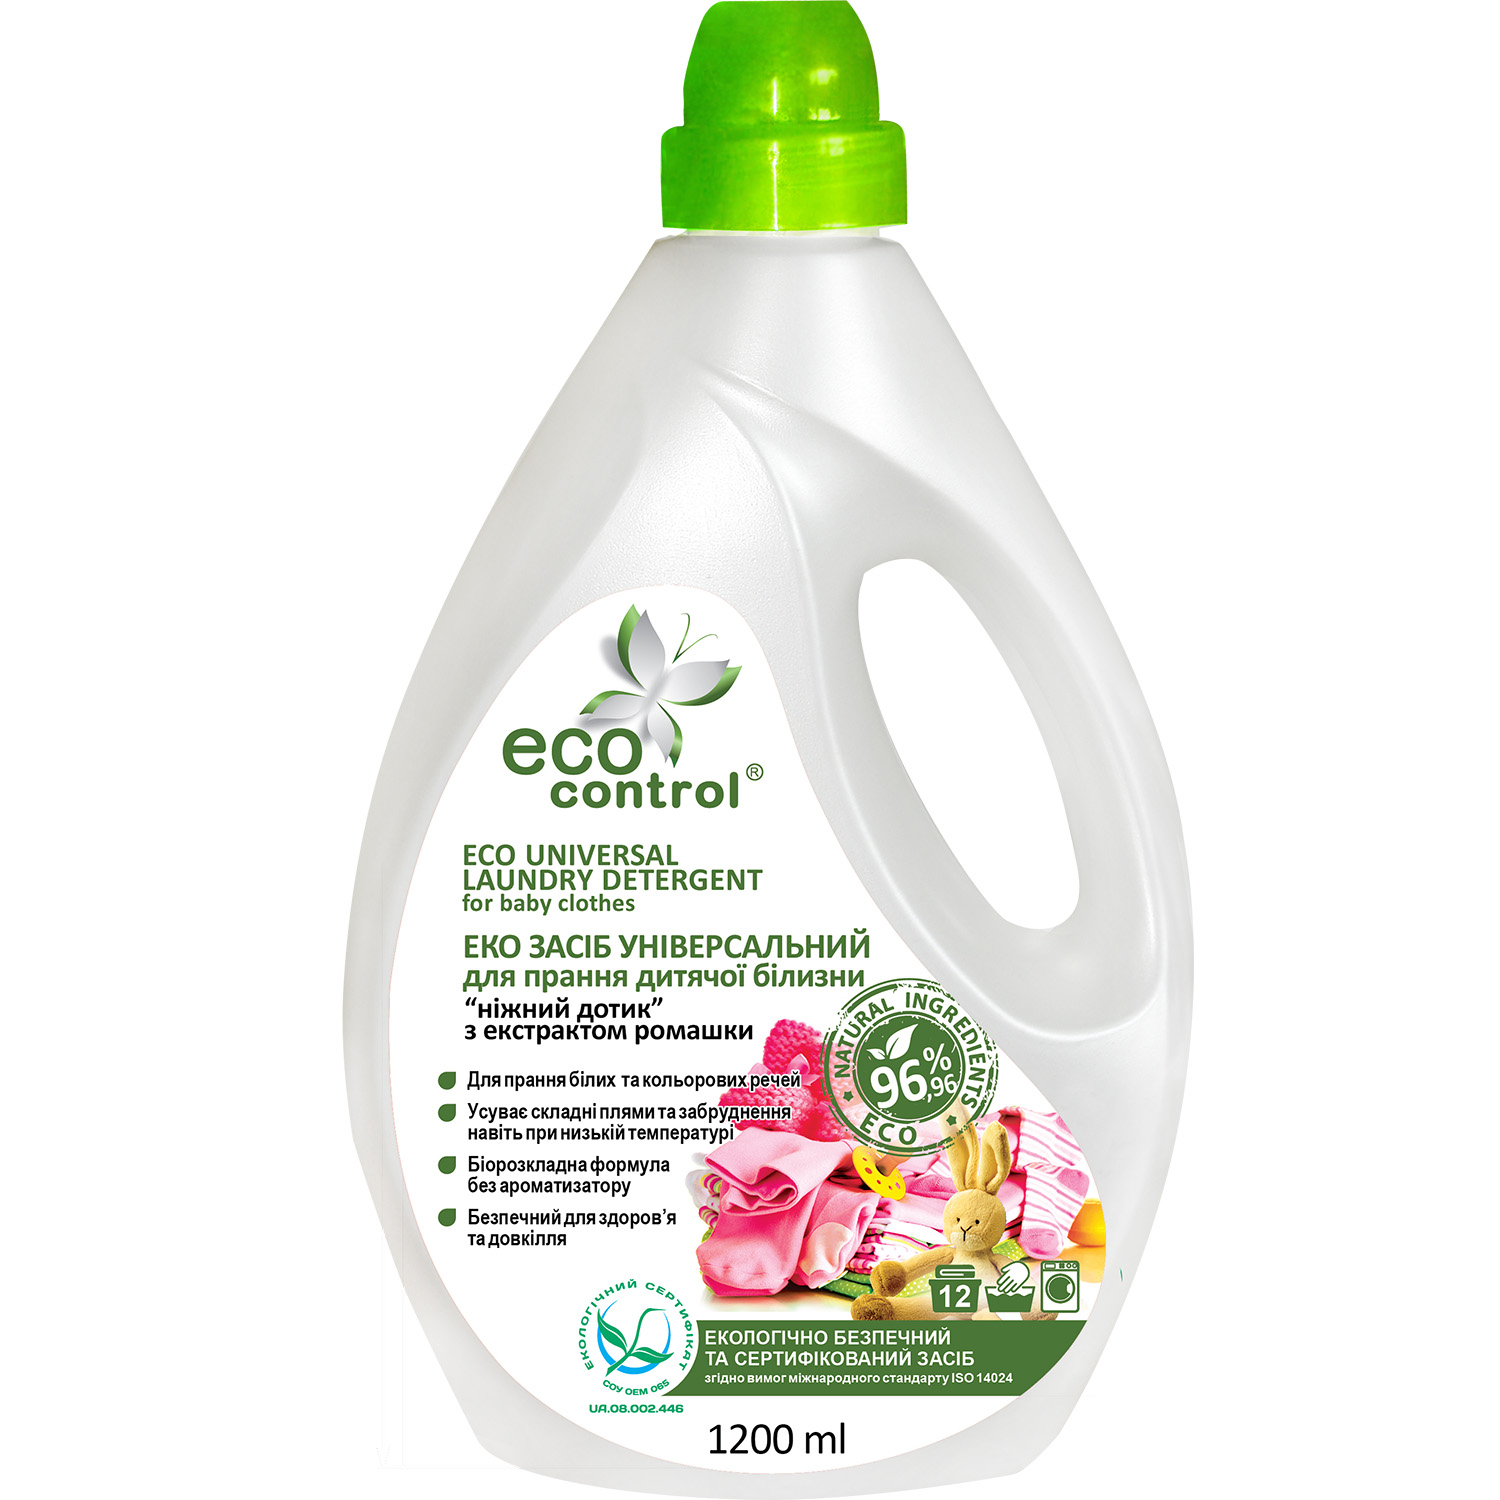 Фото - Засіб гігієни Еко засіб універсальний для прання дитячої білизни Eco Control Ніжний доти